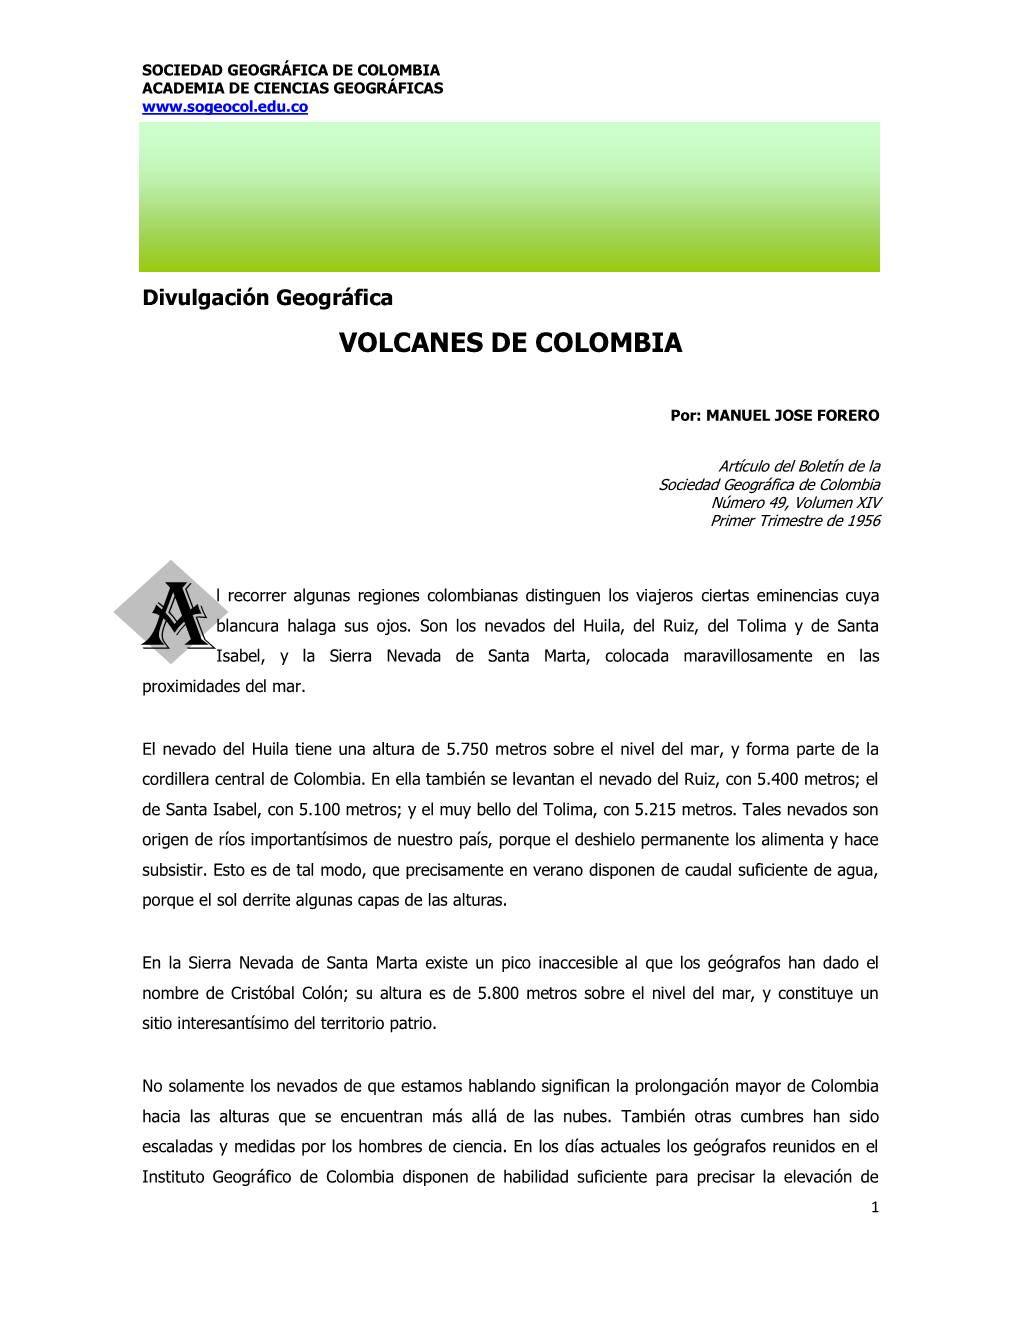 Volcanes De Colombia